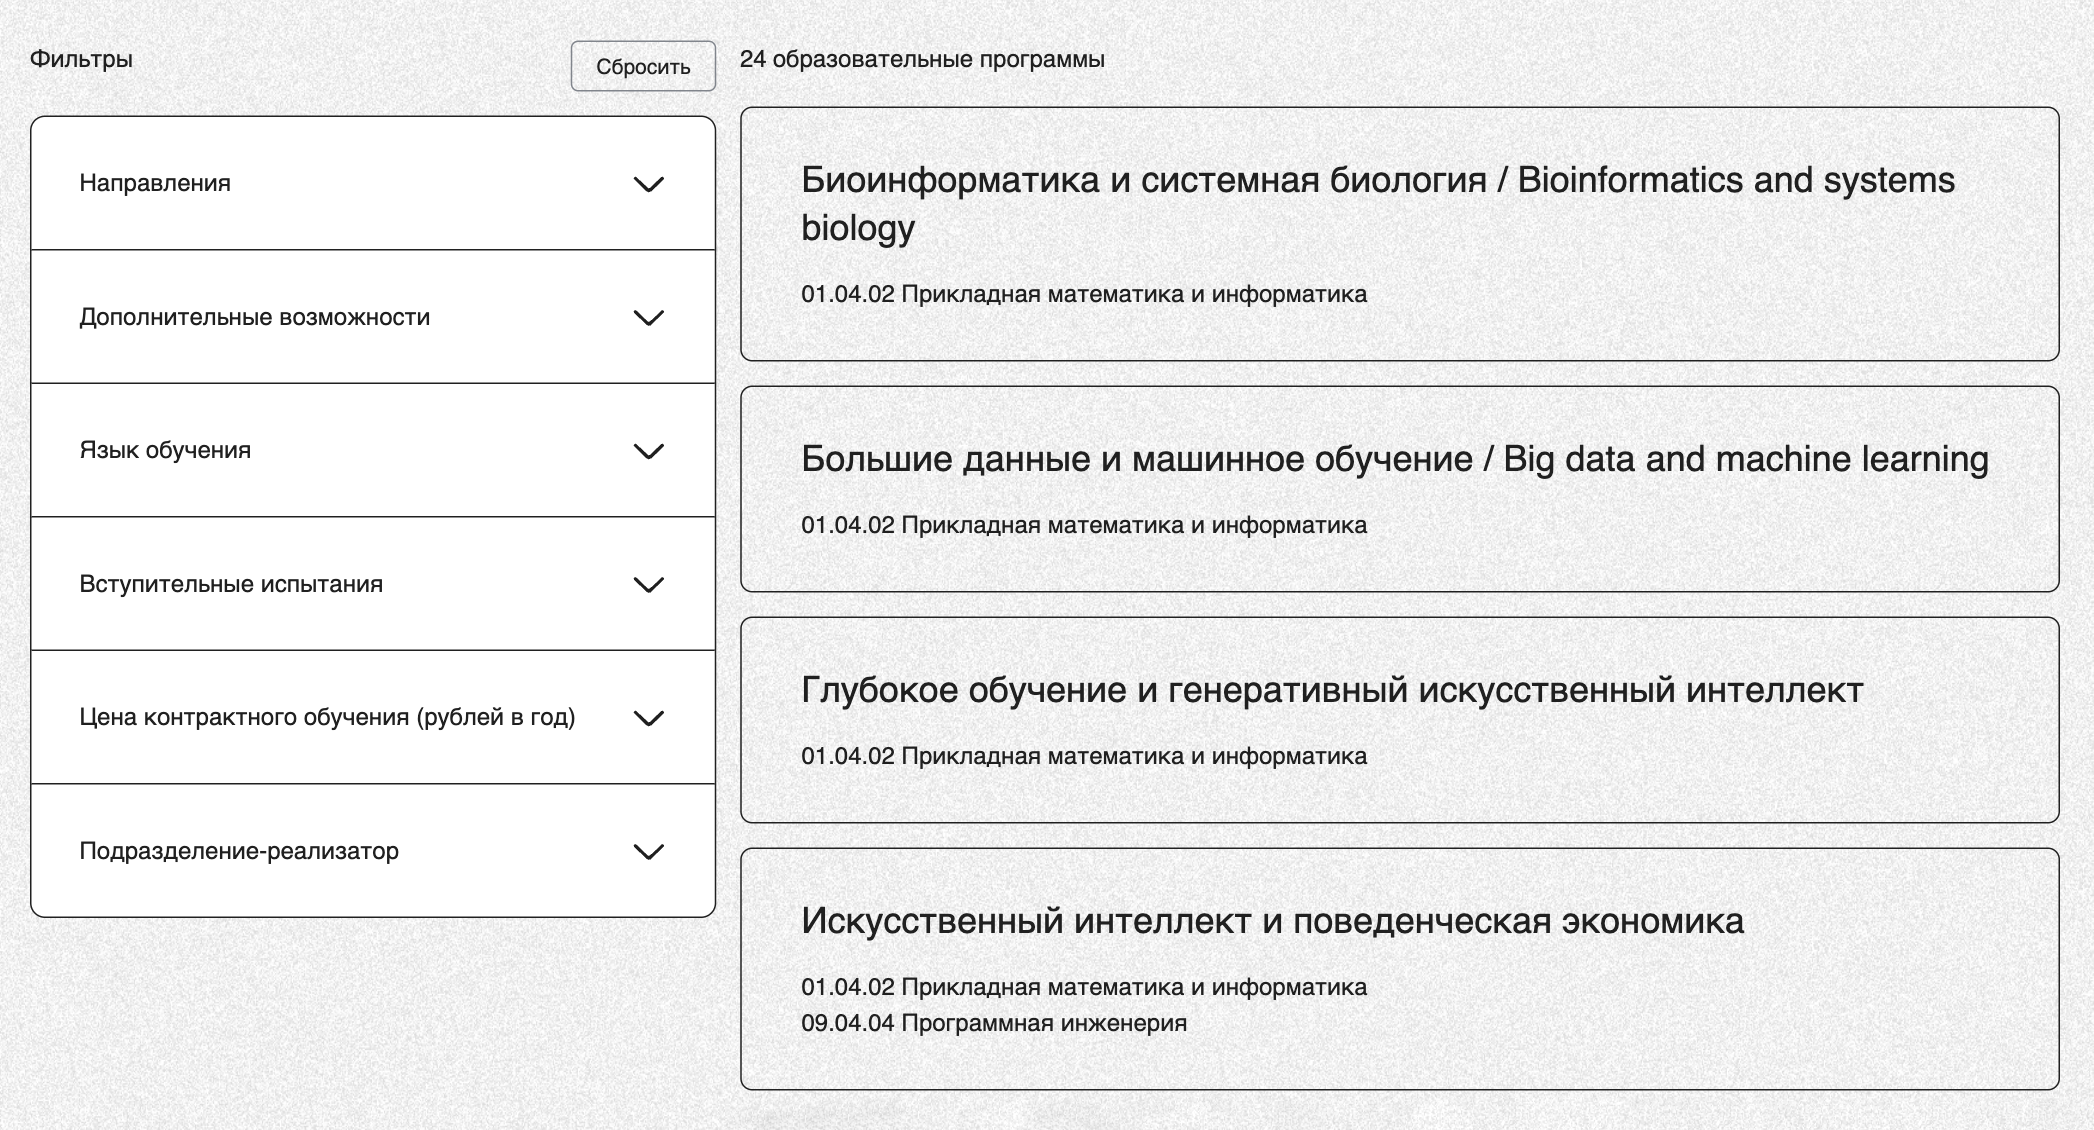 На многих программах есть бюджетные места. Источник: abit.itmo.ru